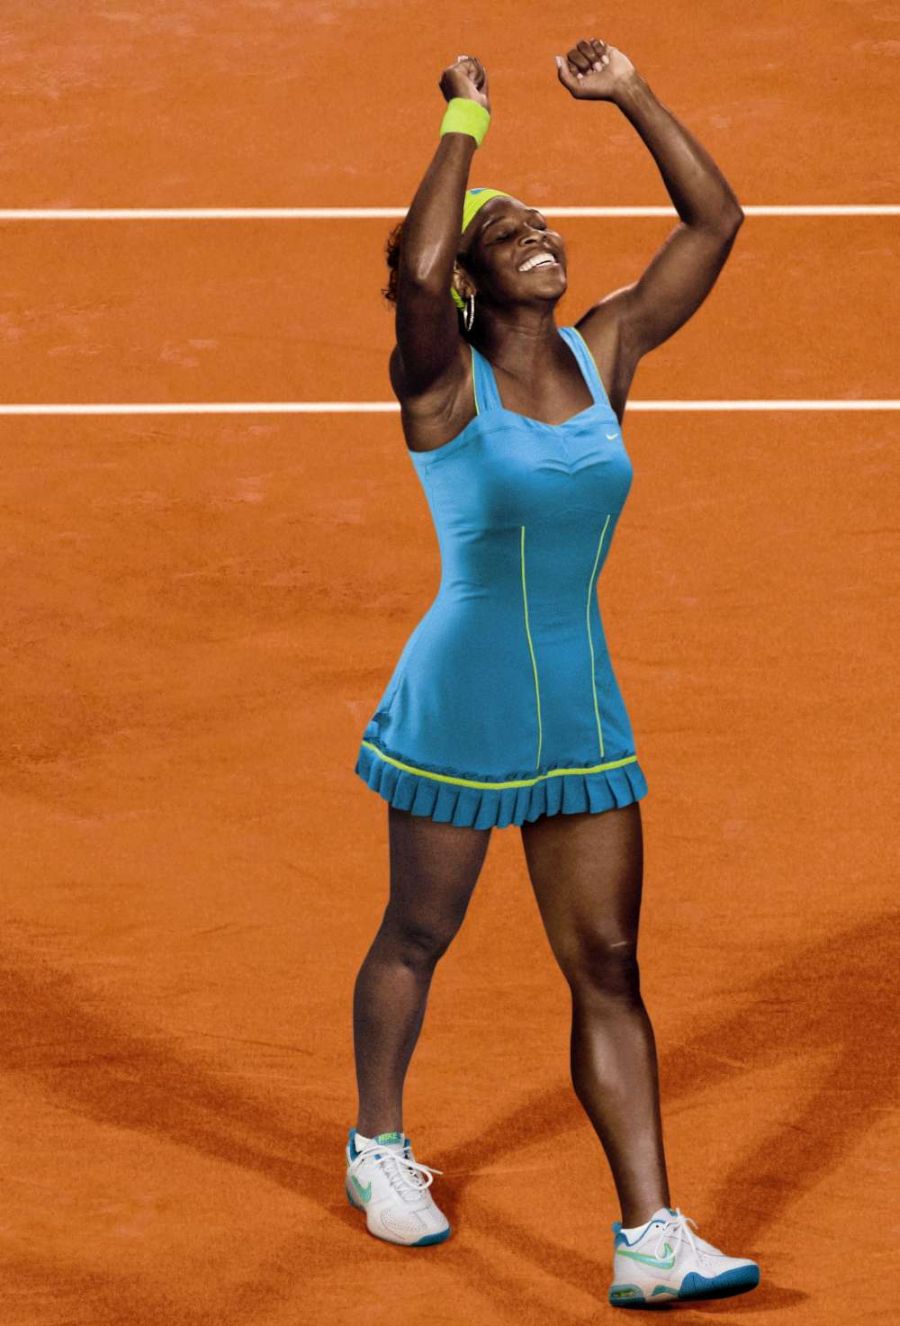 WTA Tokio: Serena Williams nie zagra z powodu zmęczenia